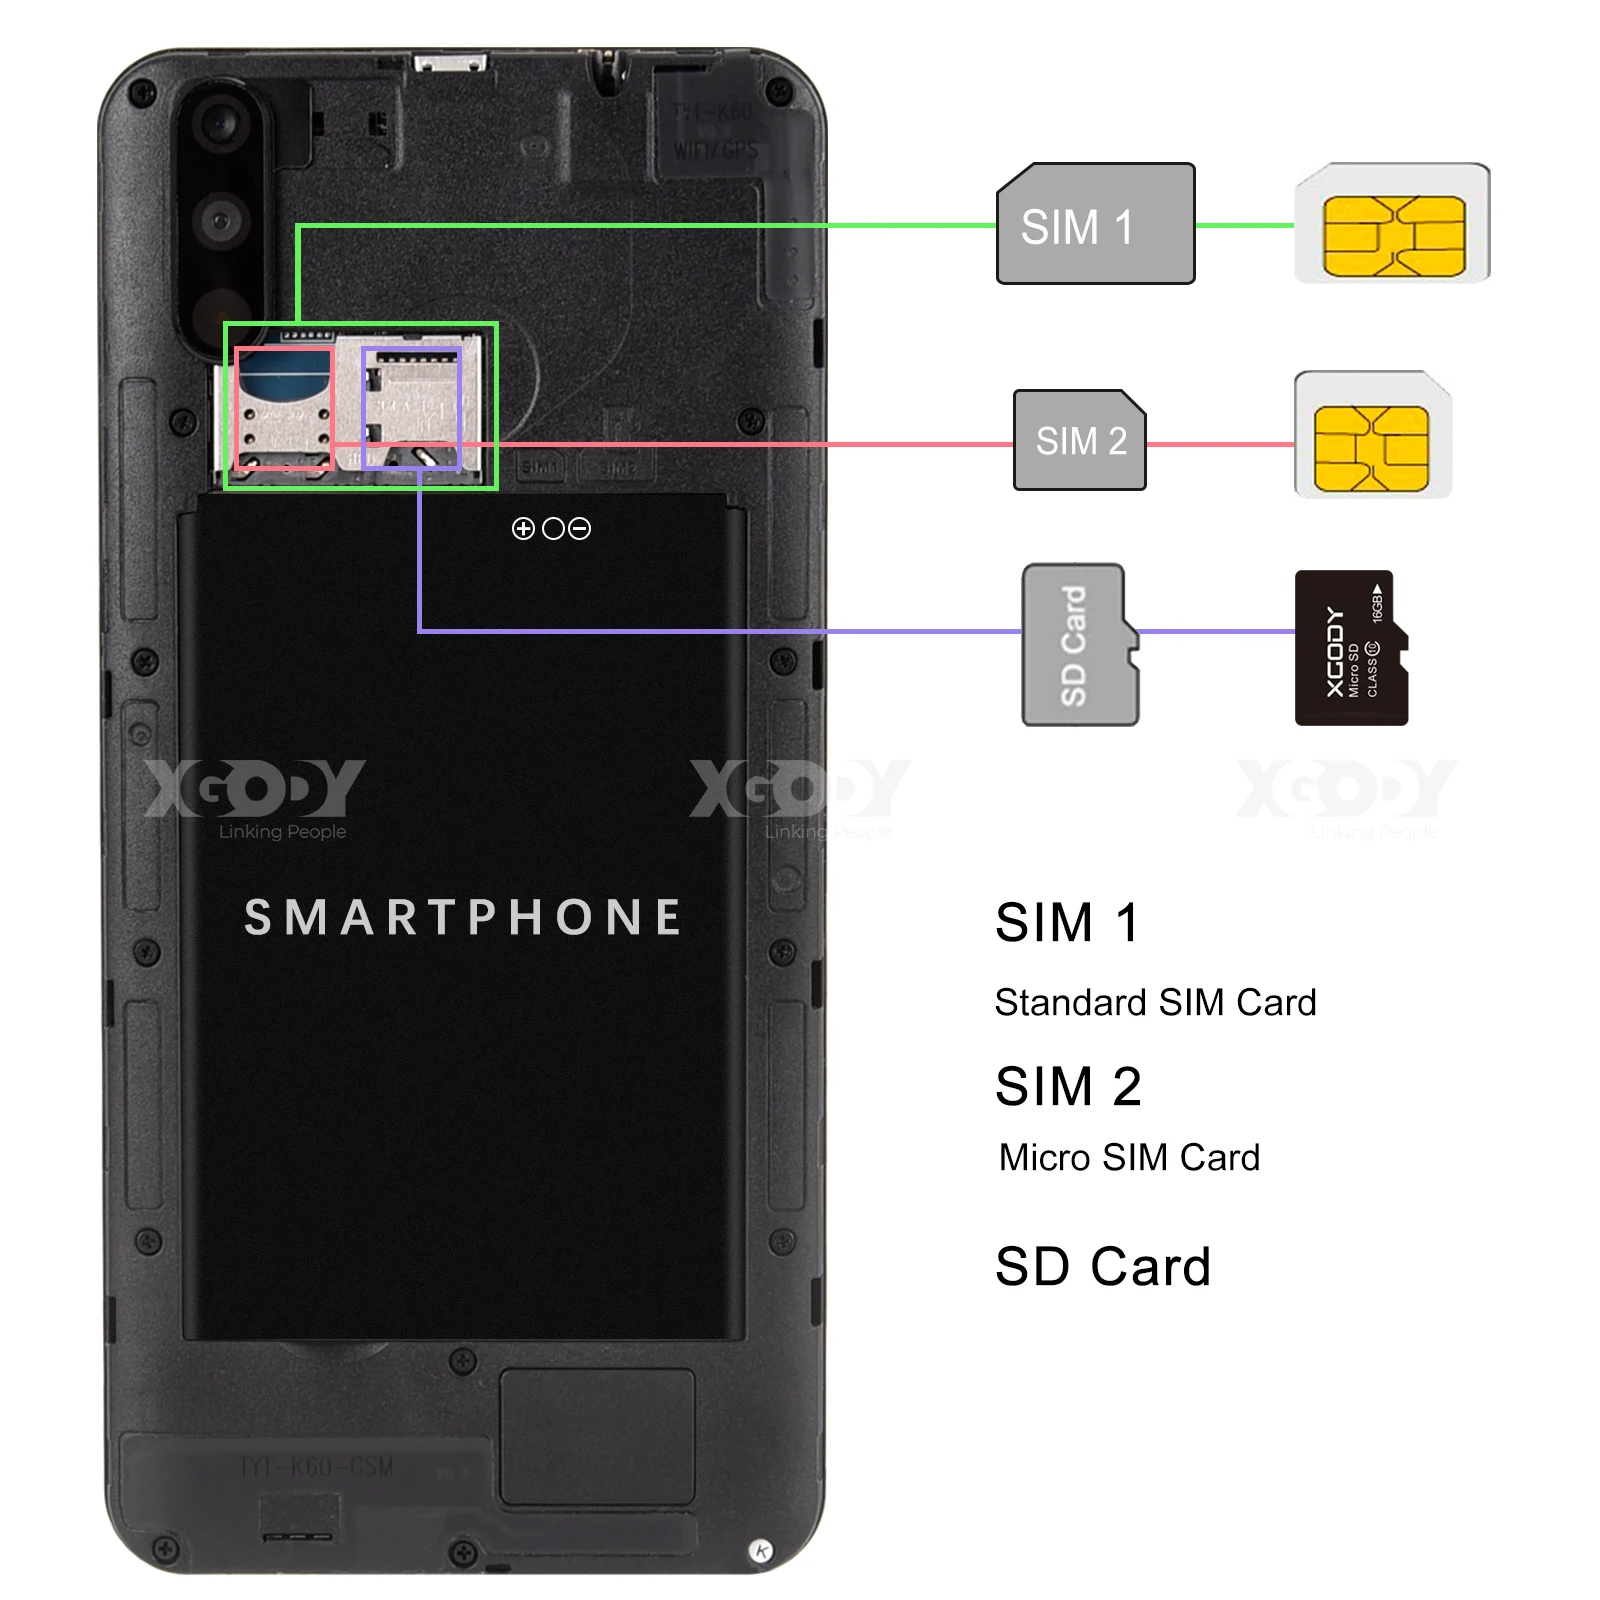 XGODY Celular смартфон с 6 дюймовым дисплеем четырёхъядерным процессором MTK6580 ОЗУ 2 Гб